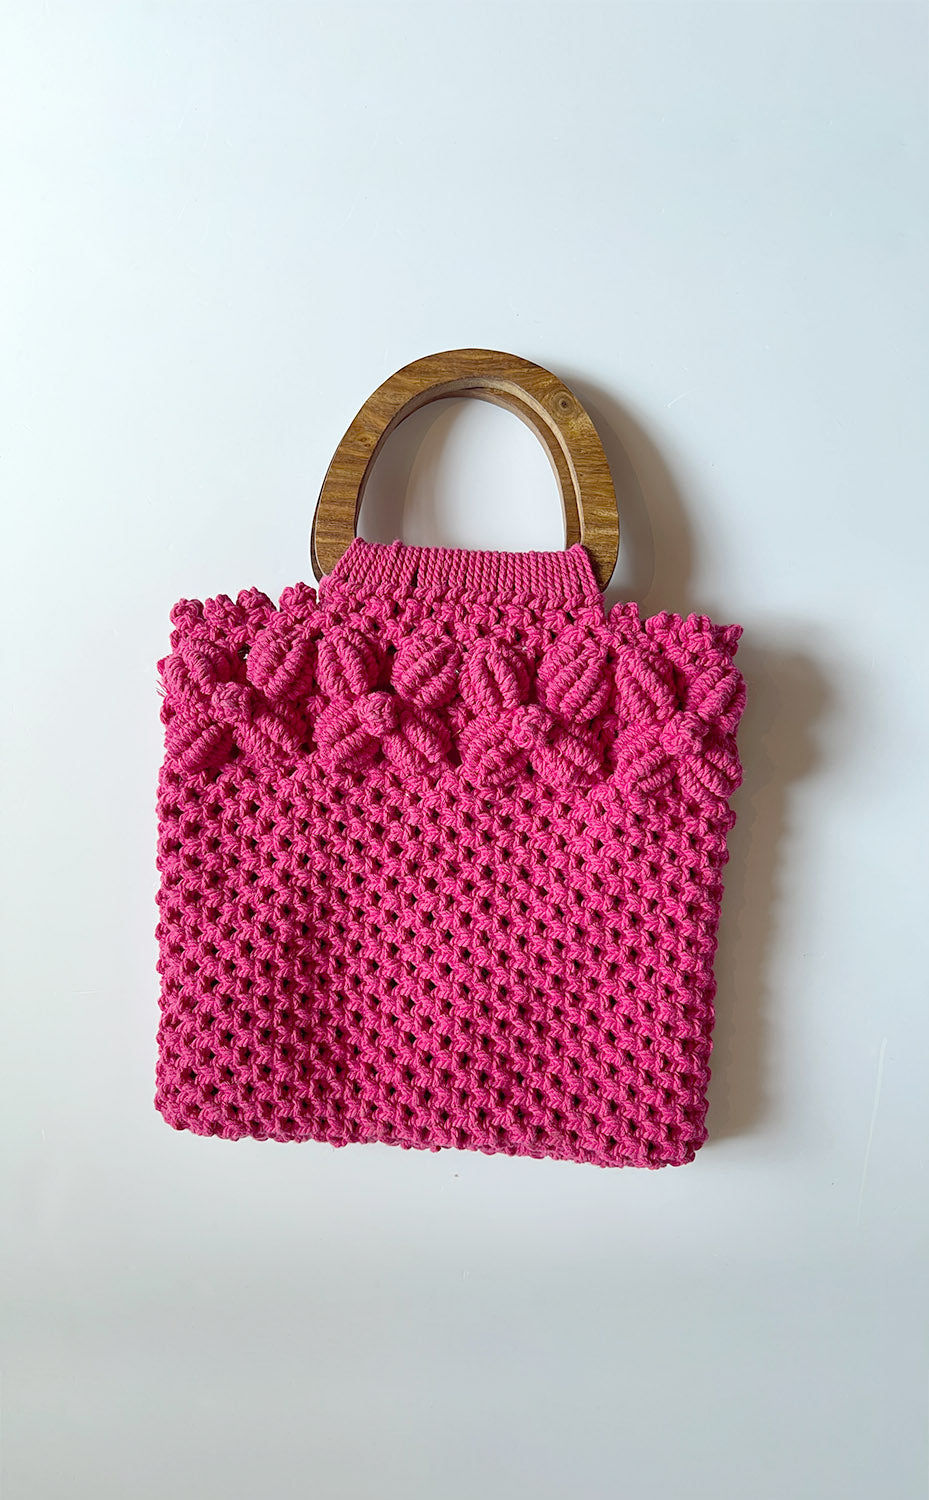 8 Gorgeous DIY Macrame Bag Patterns by Soulful Notions | Macrame patterns,  Macrame patterns tutorials, Macrame knots pattern